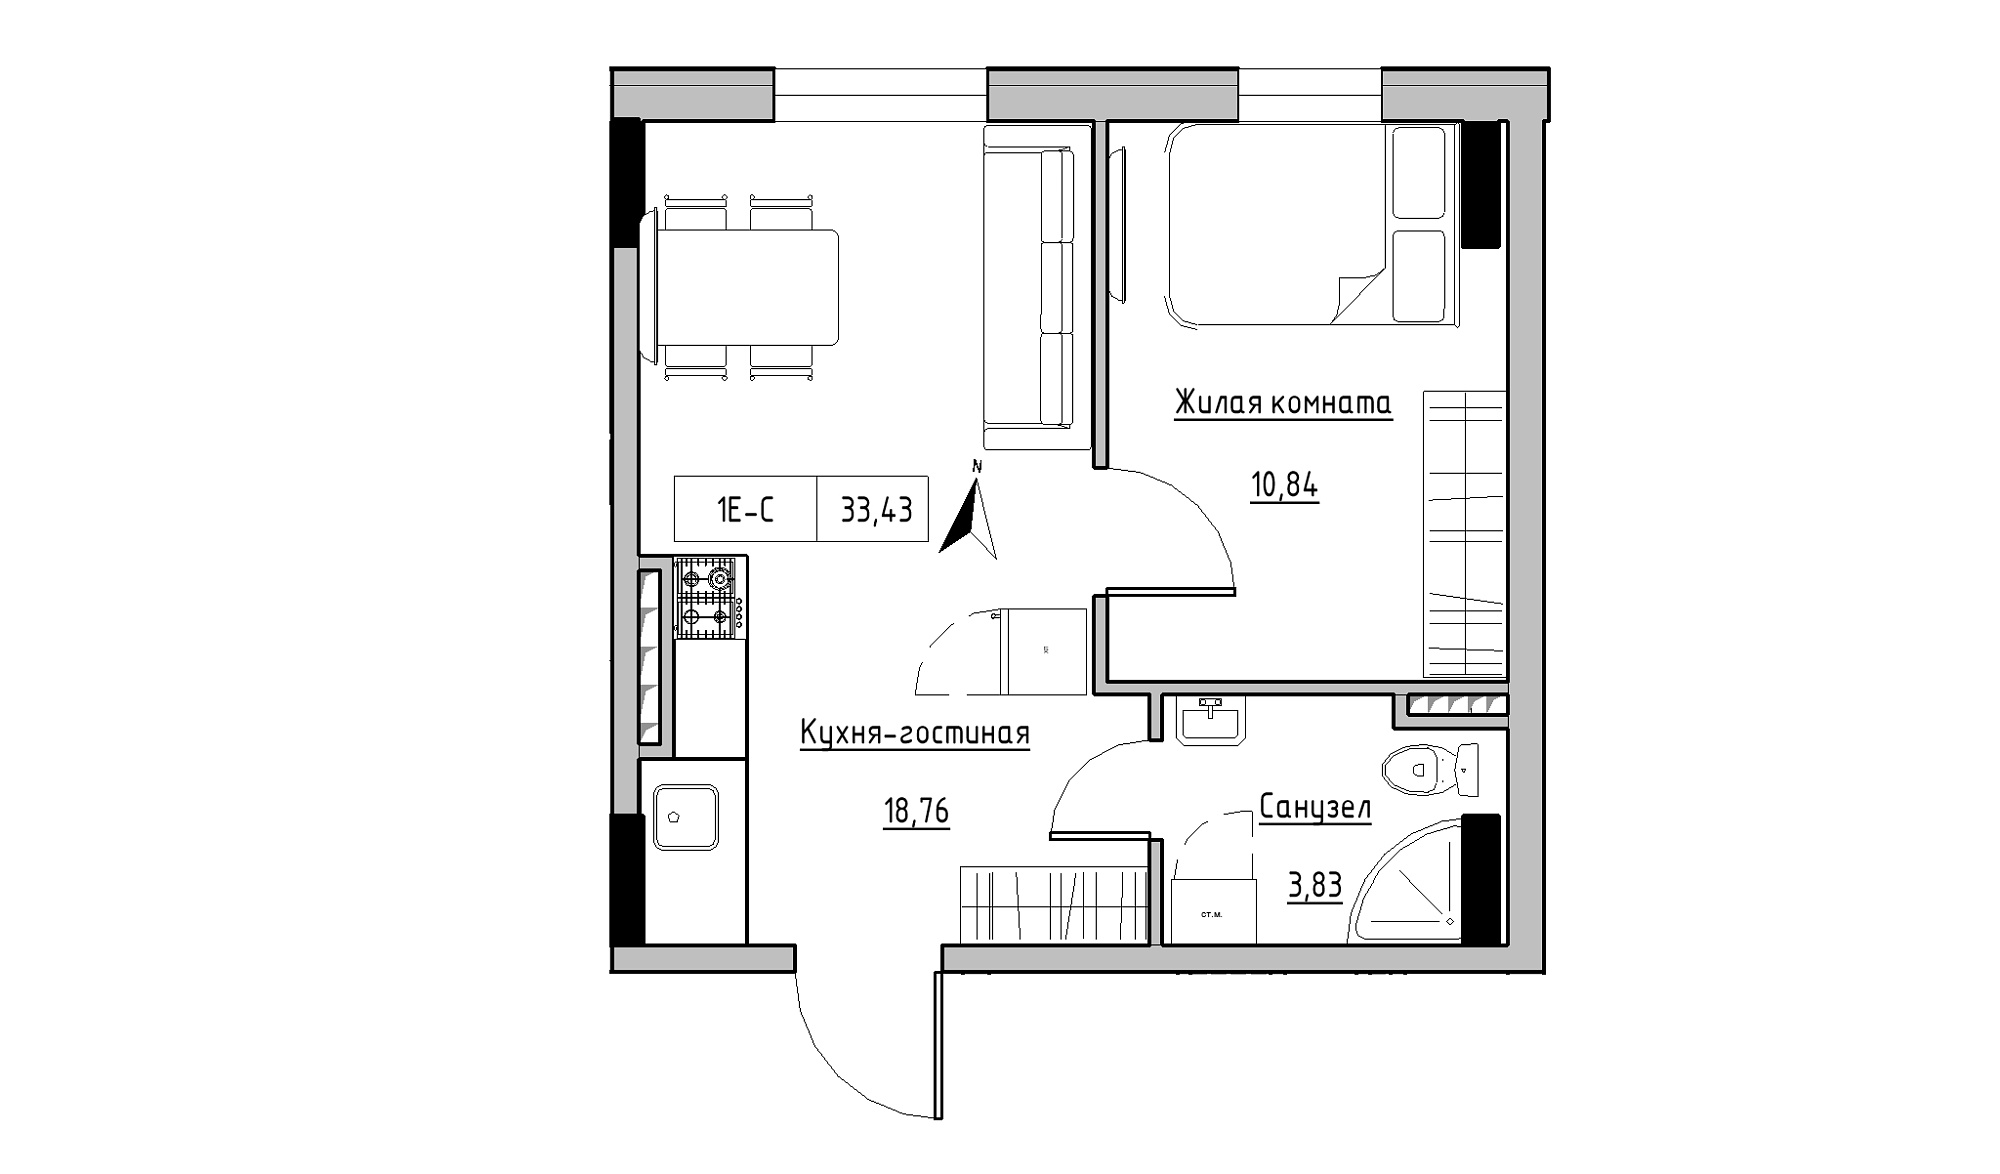 Планировка 1-к квартира площей 33.43м2, KS-025-04/0010.